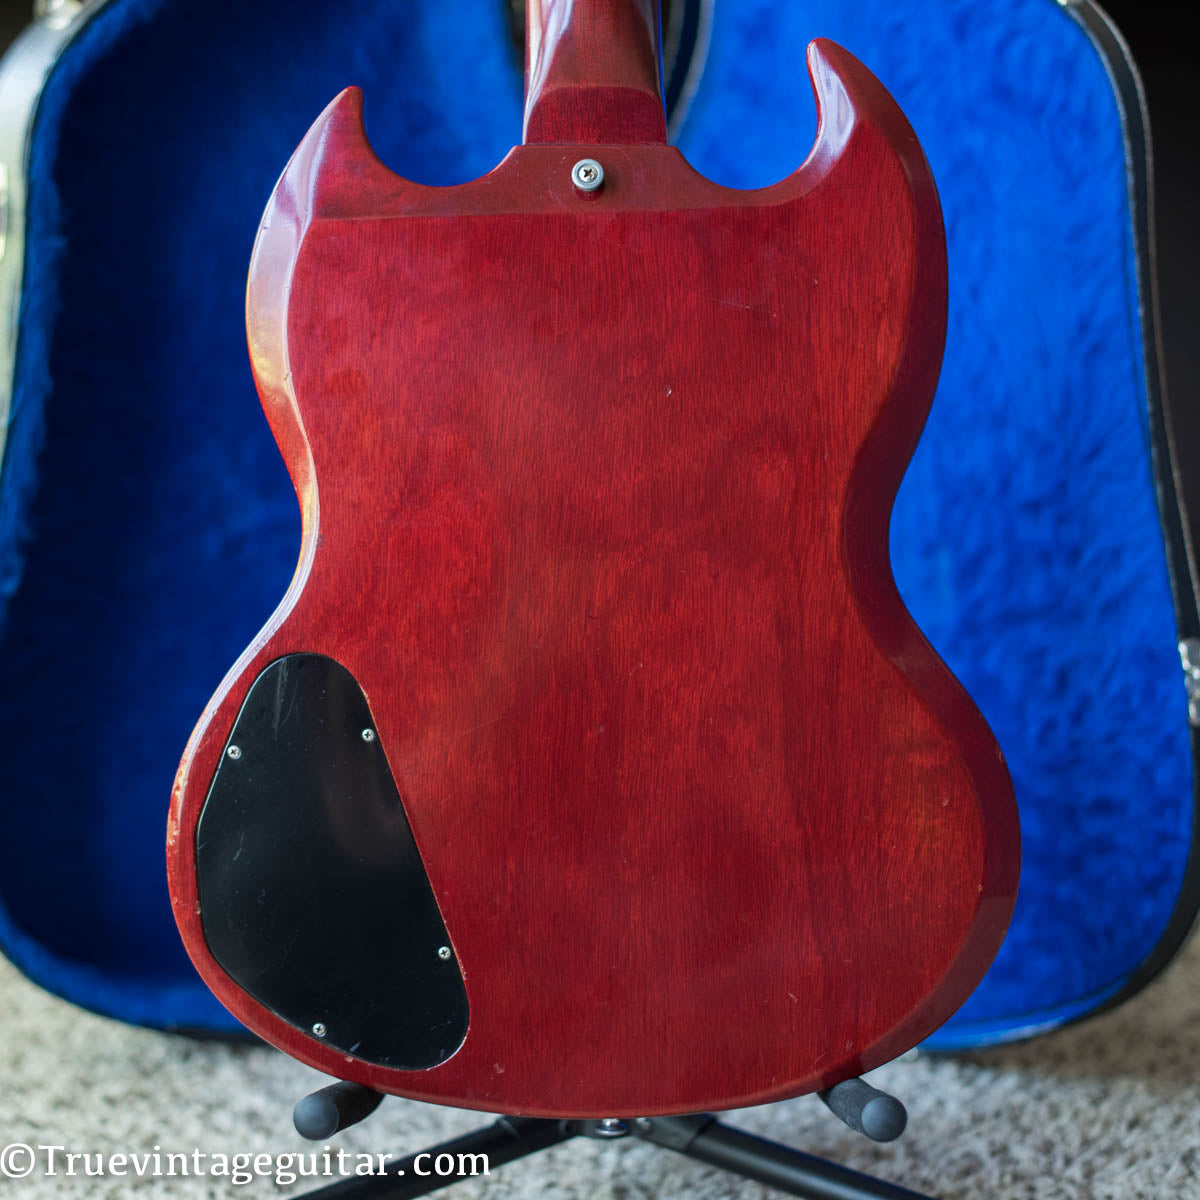 Gibson SG guitar